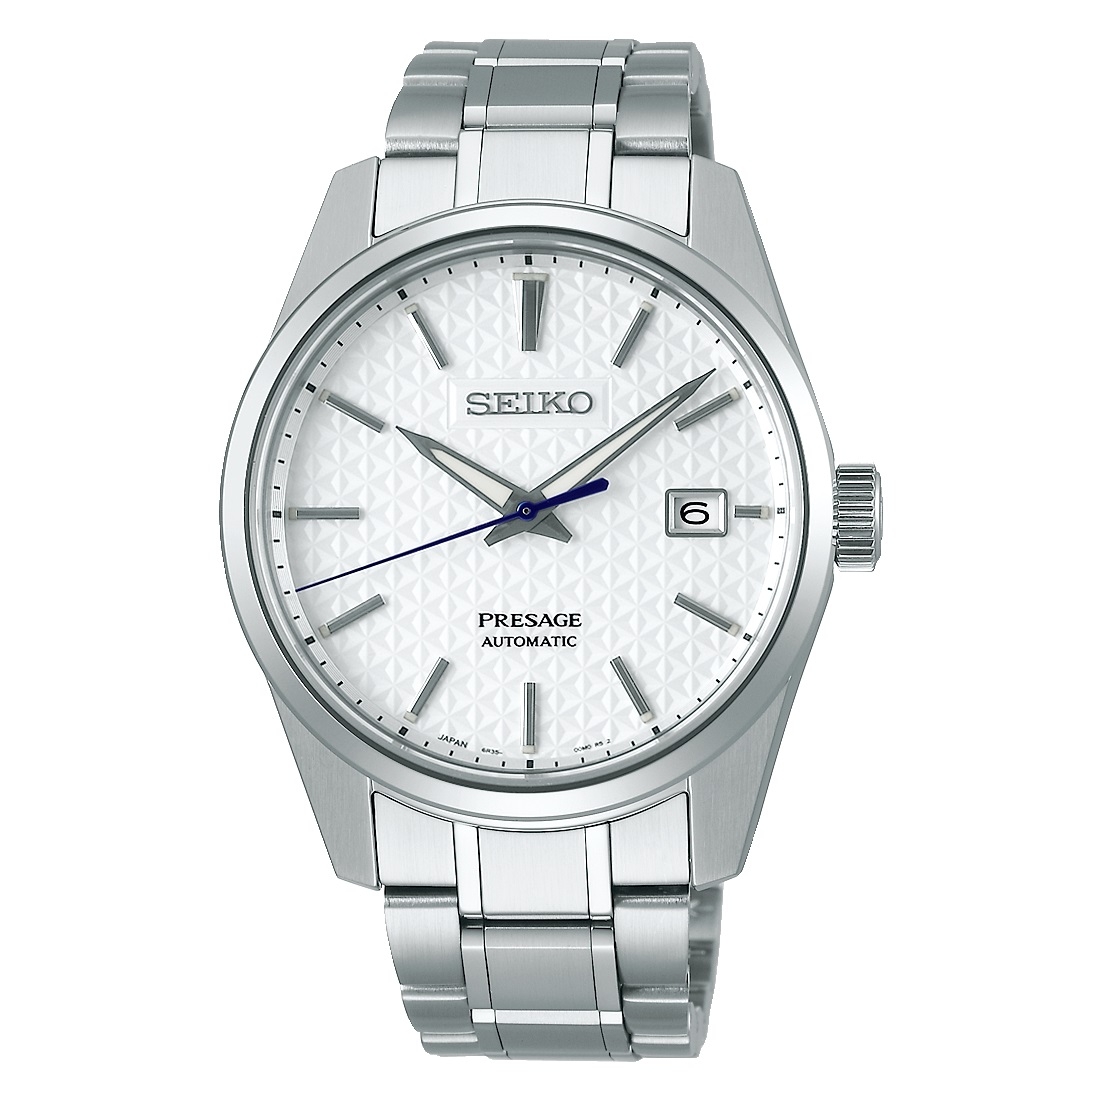 SEIKO - Uhren - Herstellung - erste - spezialisiert | wwt b2b